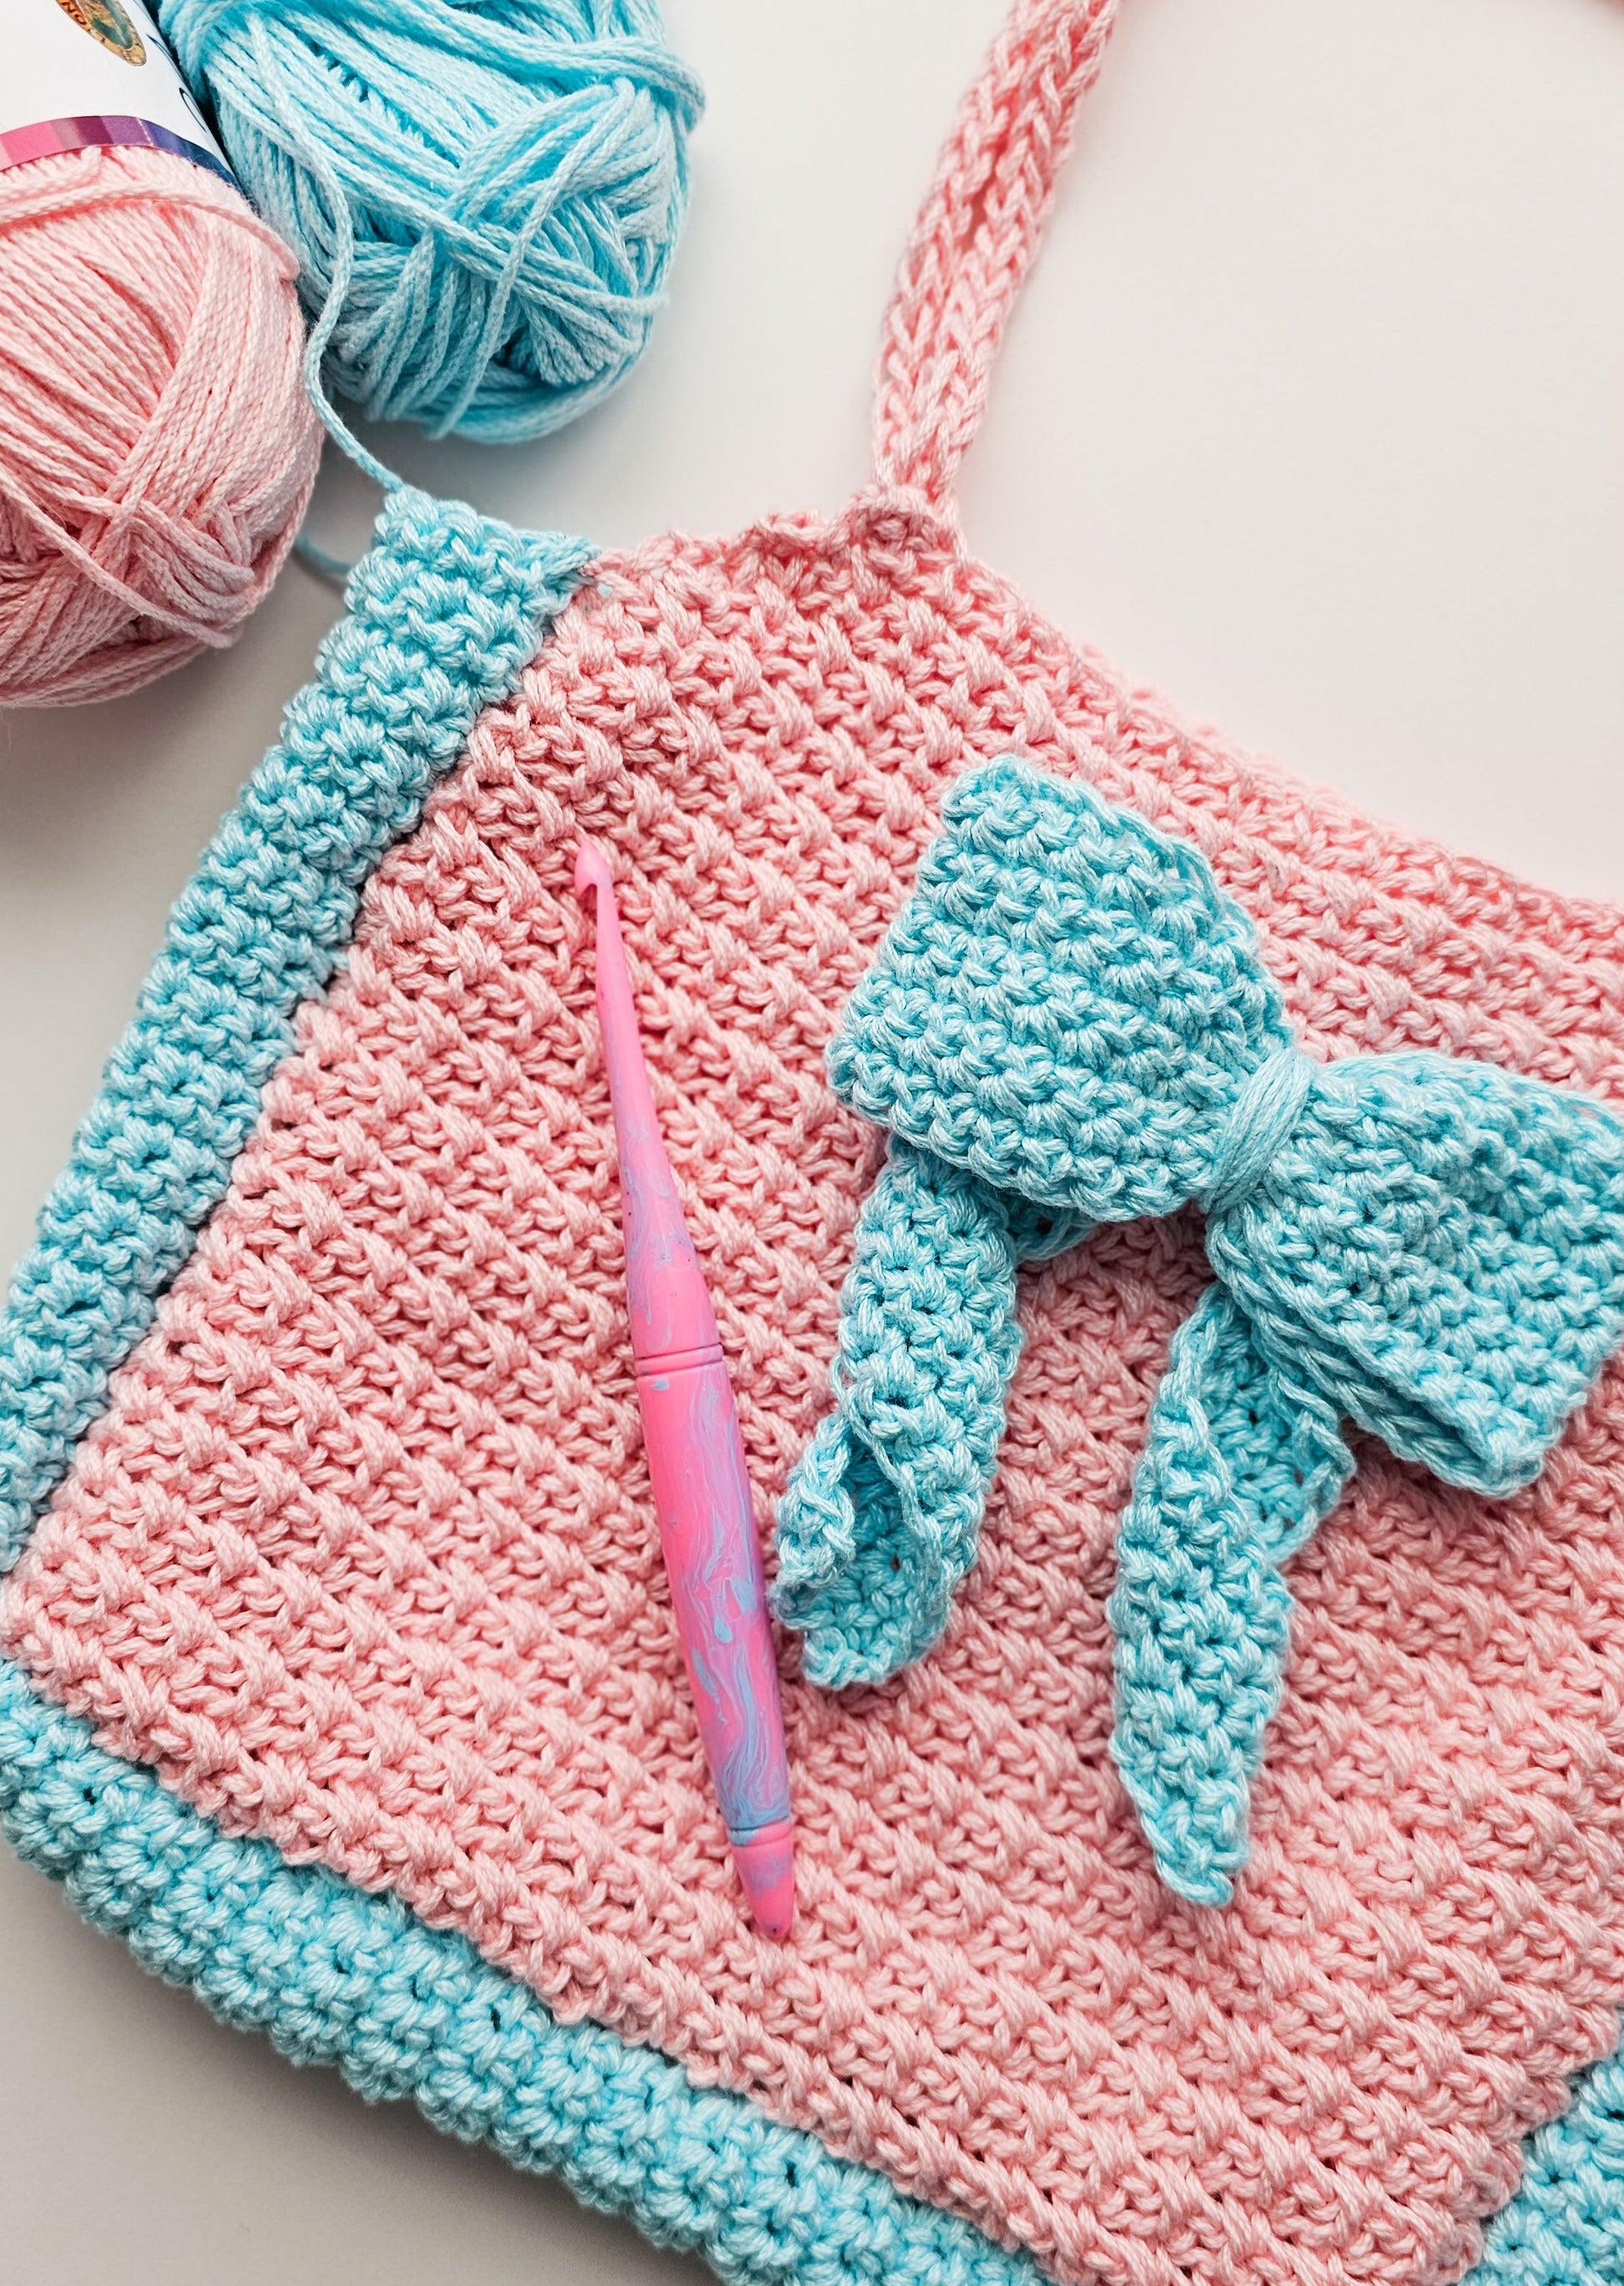 Crochet Purse Pattern (FREE) - Crochet Dreamz